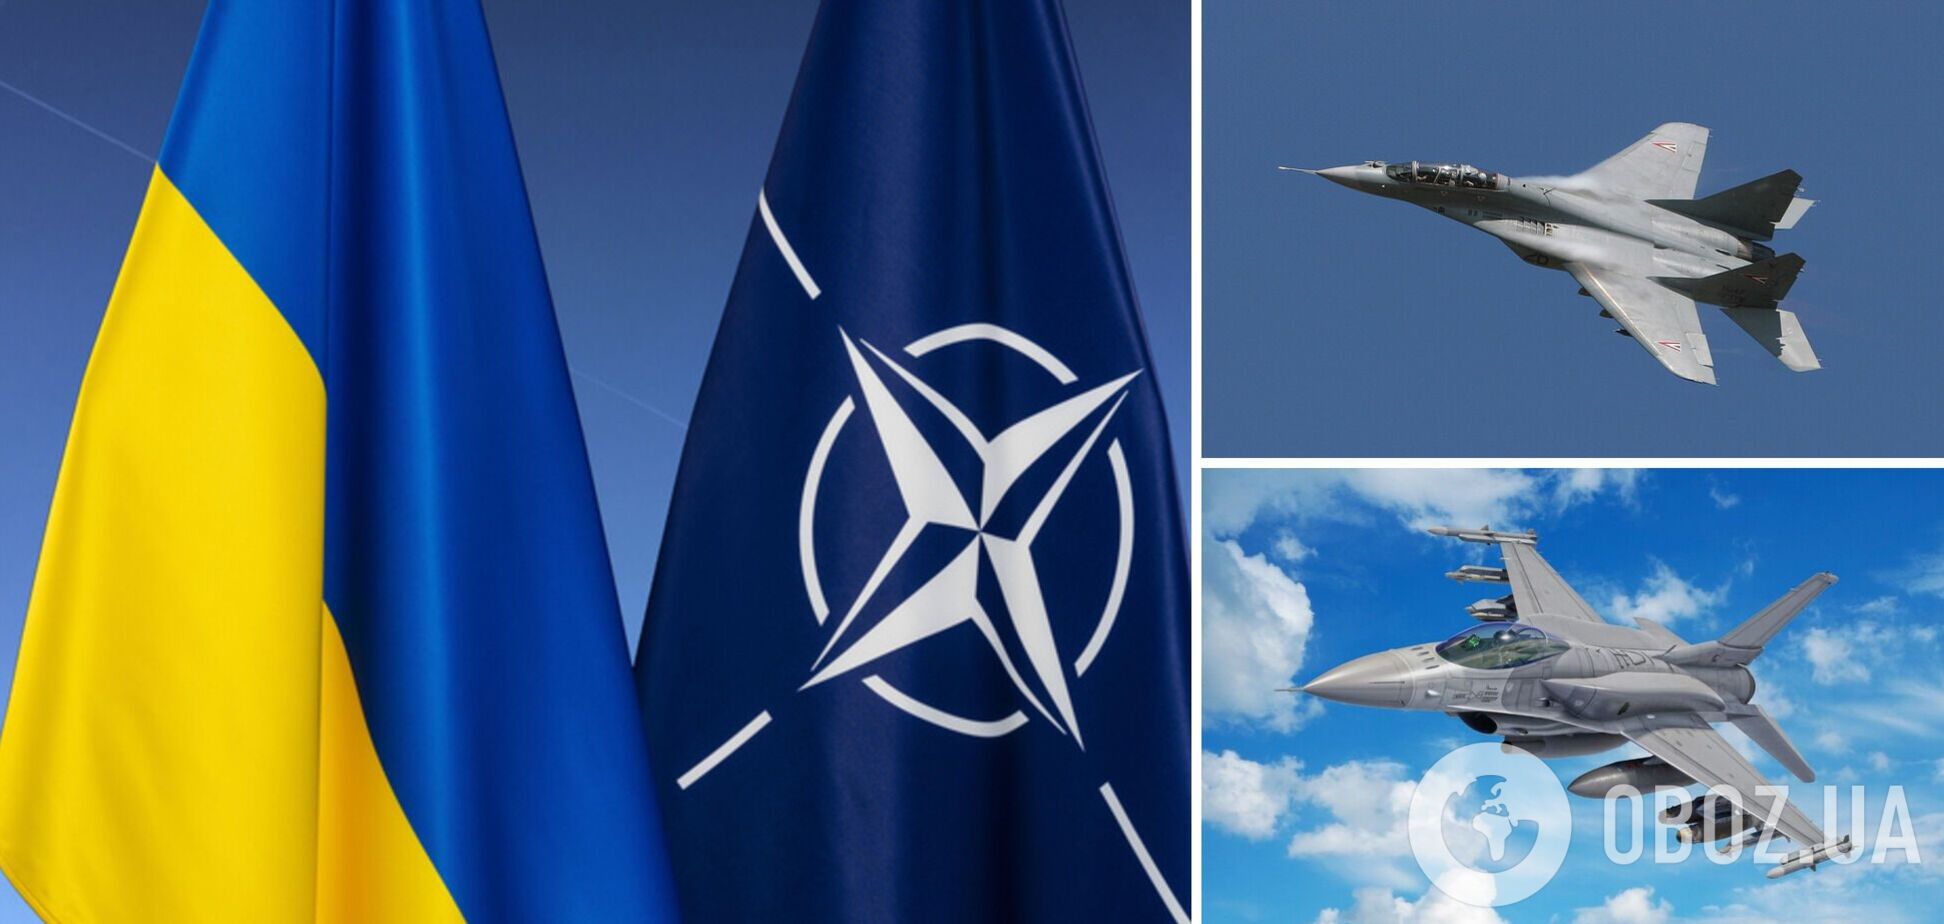 Путін влаштує 'килимові бомбардування', якщо Захід не діятиме: в НАТО розглядають передачу Україні Міг-29 або F-16 - Bloomberg